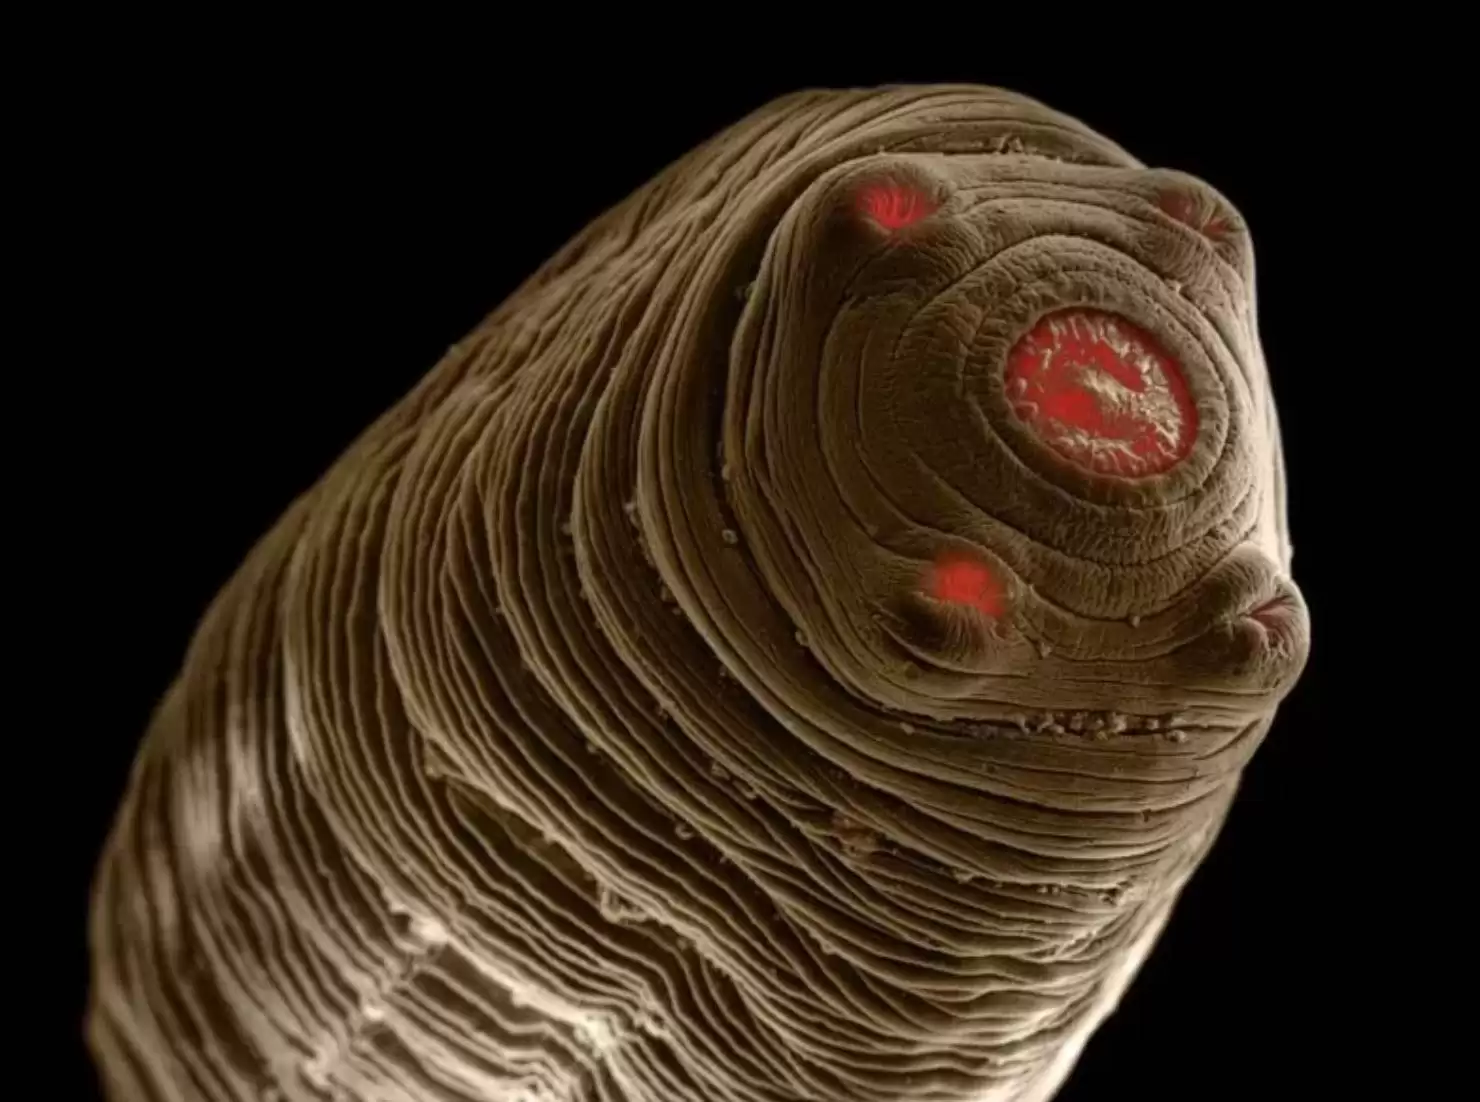 تصاویر - این کرم های انگلی می توانند داخل بدن حیوانات خانگی زندگی کنند